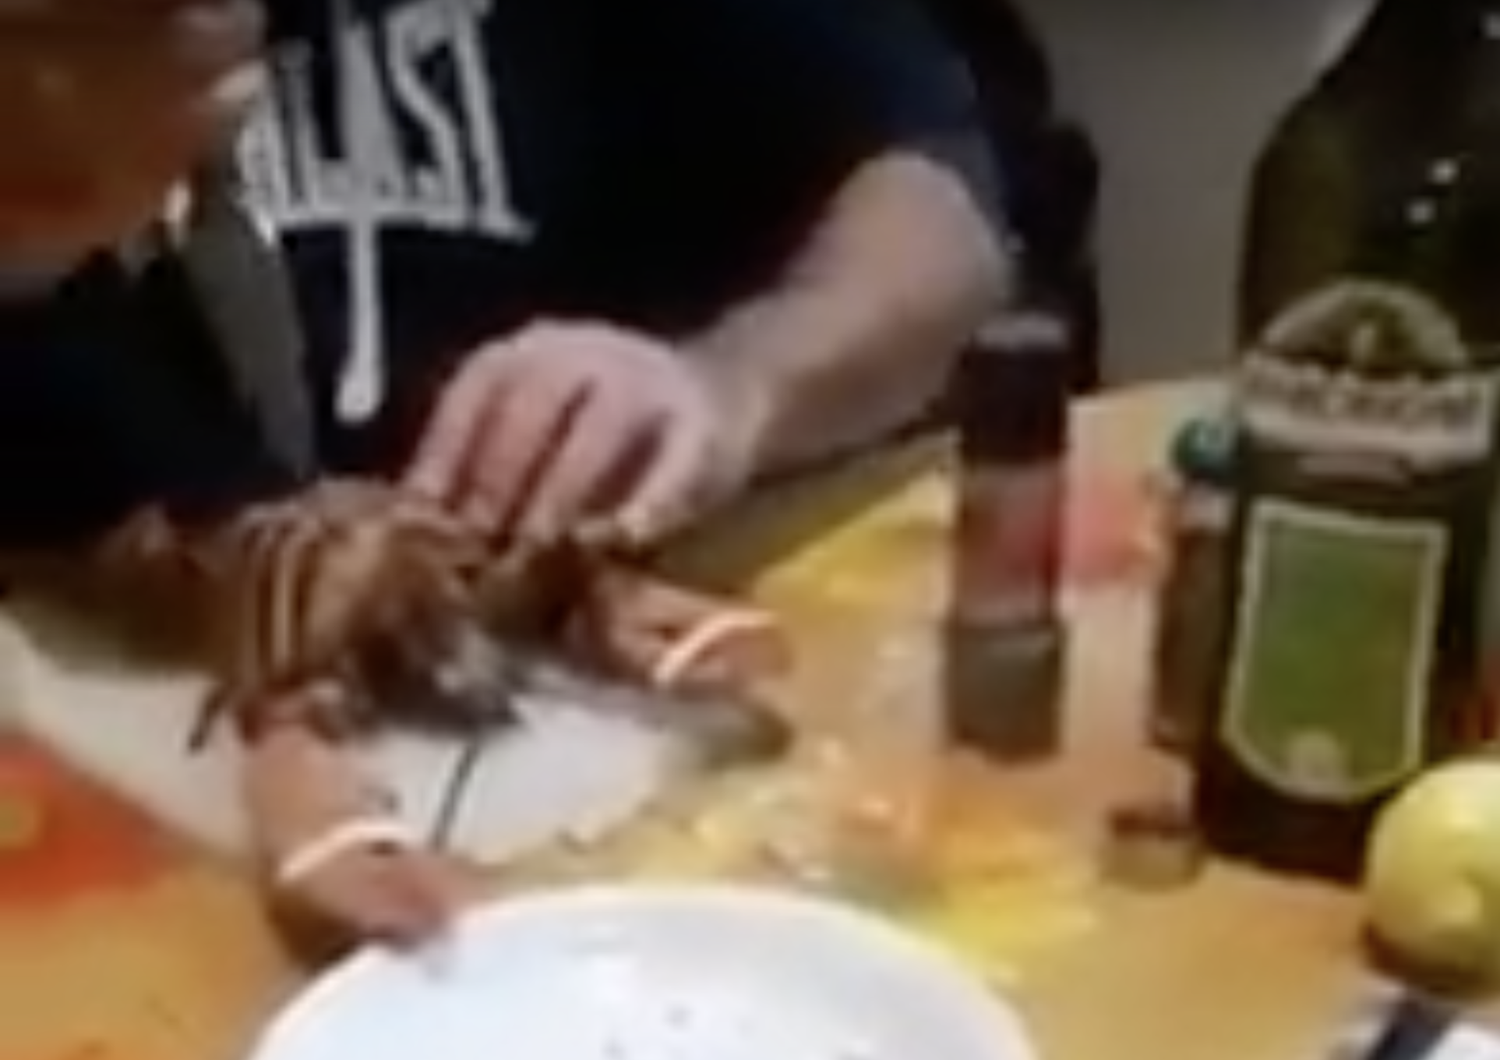 Un fotogramma del video in cui un uomo scanna un'aragosta viva